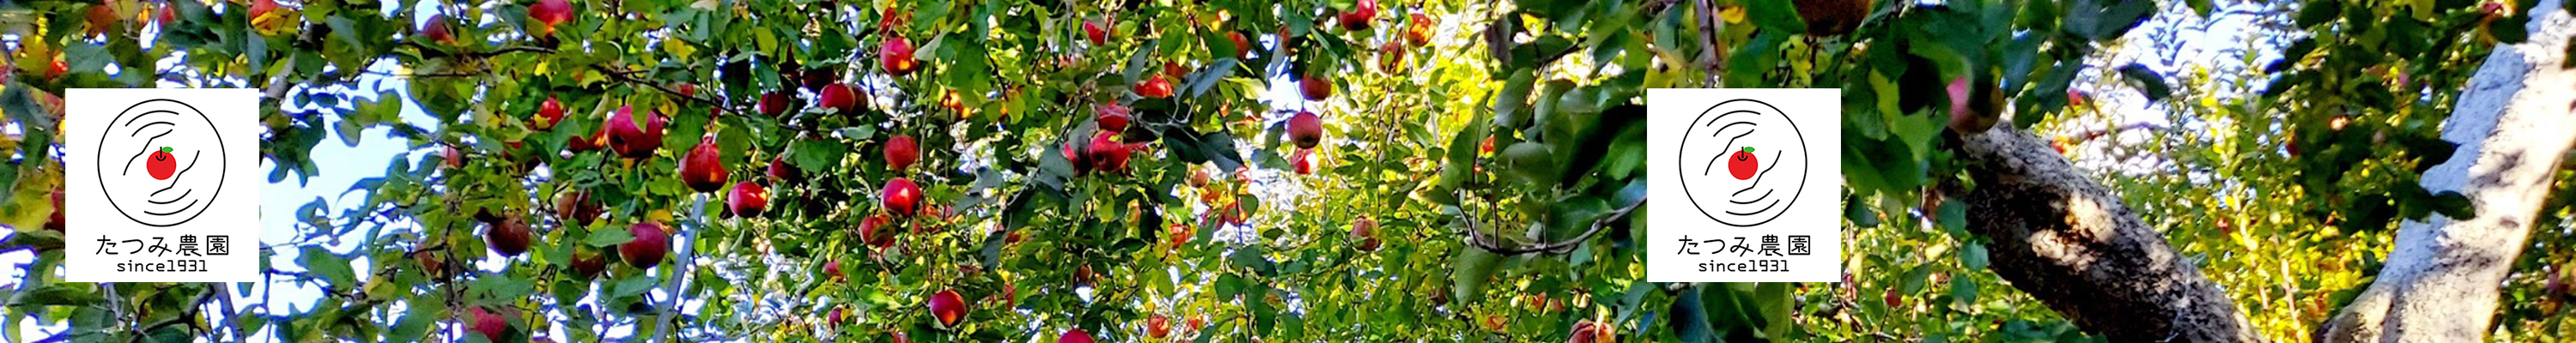 Sightseeing apple picking at Tatsumi Farm